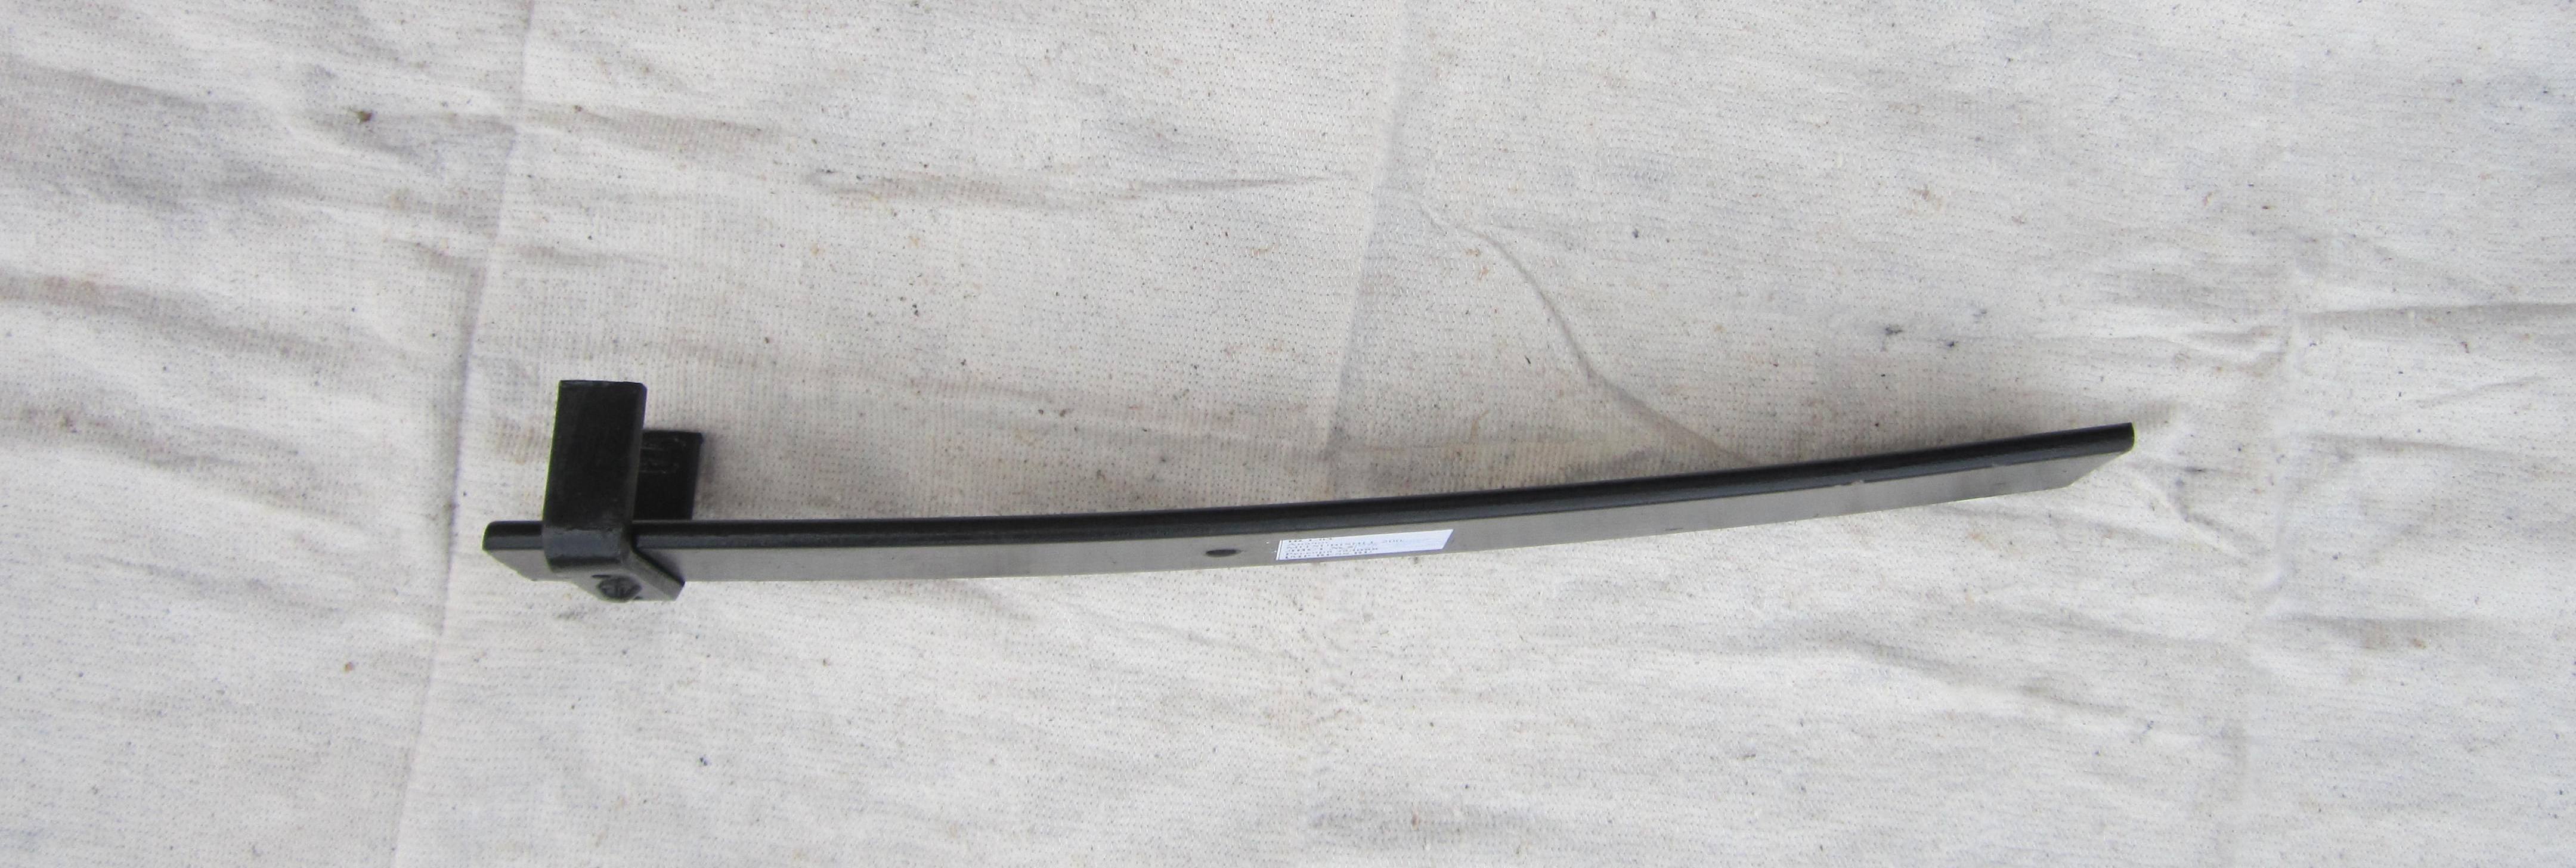 MITSUBISHI L200 рессора задняя лист № 5 (Арт. IR 01-10-05)
Изготовлены из полосы сечение 70*11, укомплектована хомутом с резьбовыми отверстиями для крепления тросика ручного тормоза,